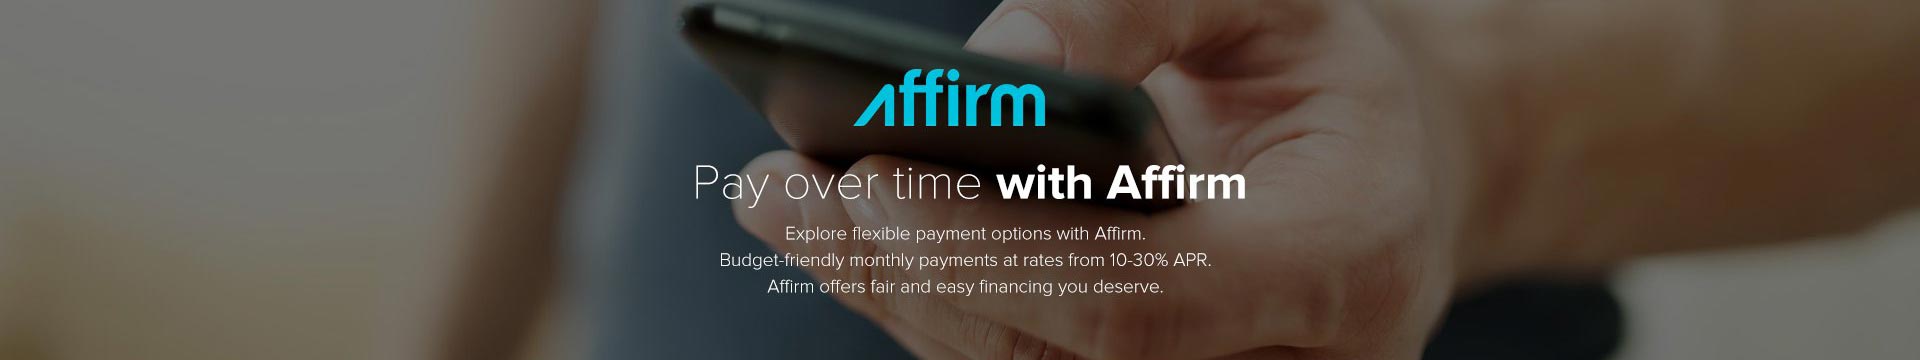 Affirm-now